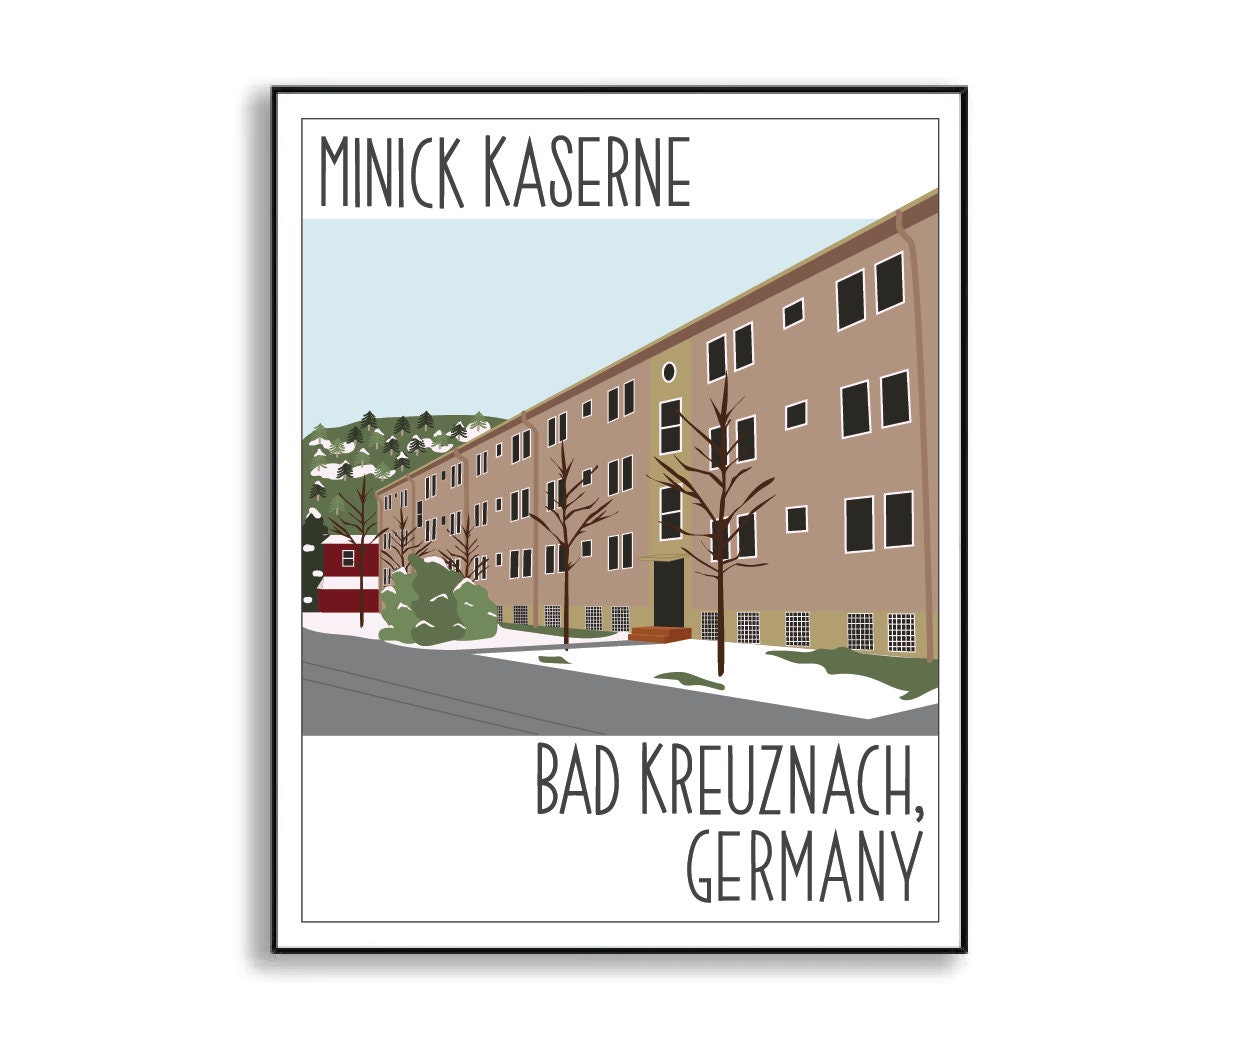 Minick Kaserne Bad Kreuznach Germany Military Base